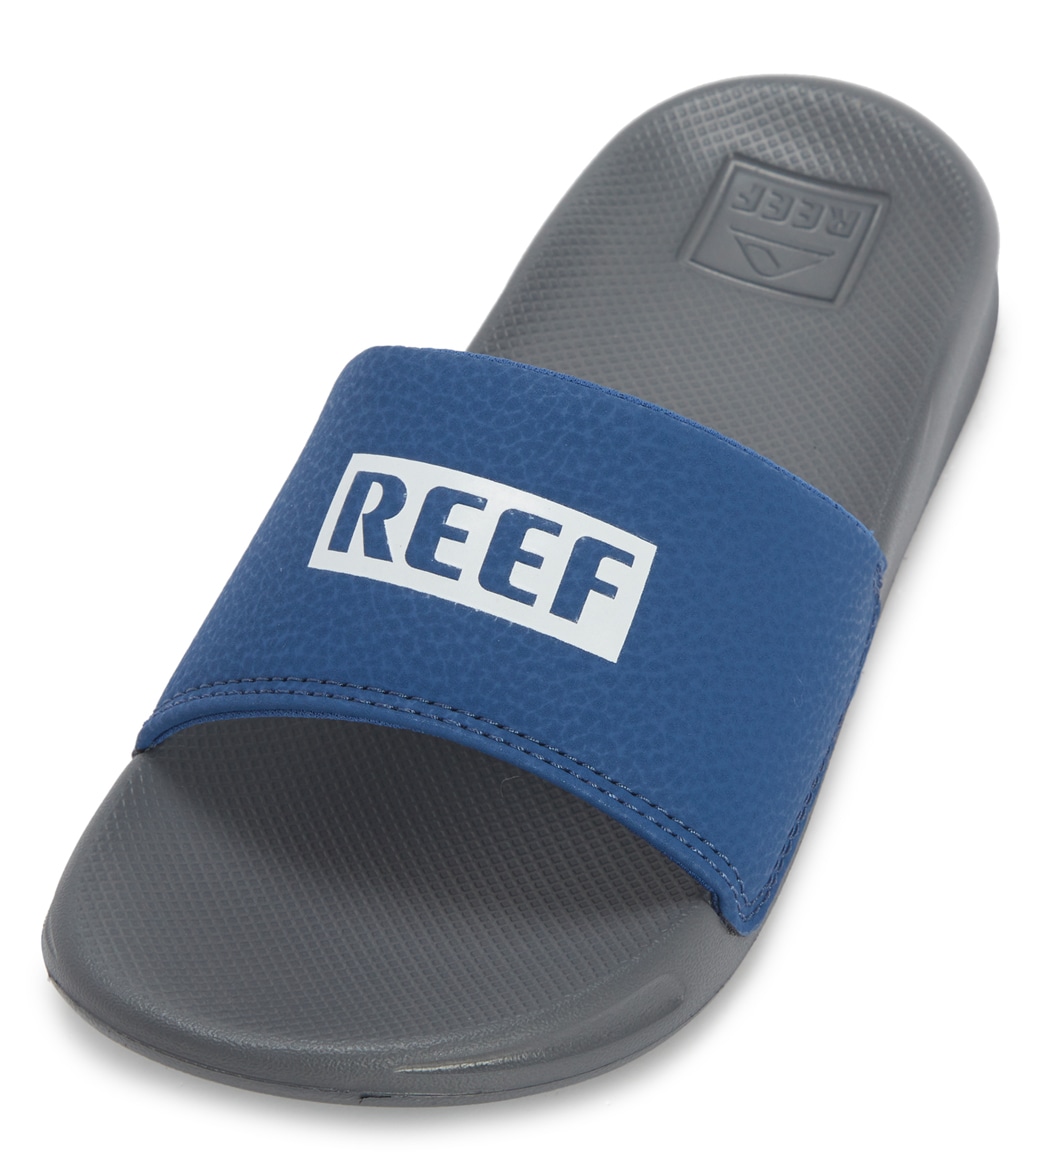 Kids' One Slides Sandals Big Kid - Reef Grey/Blue 13/1 - Swimoutlet.com